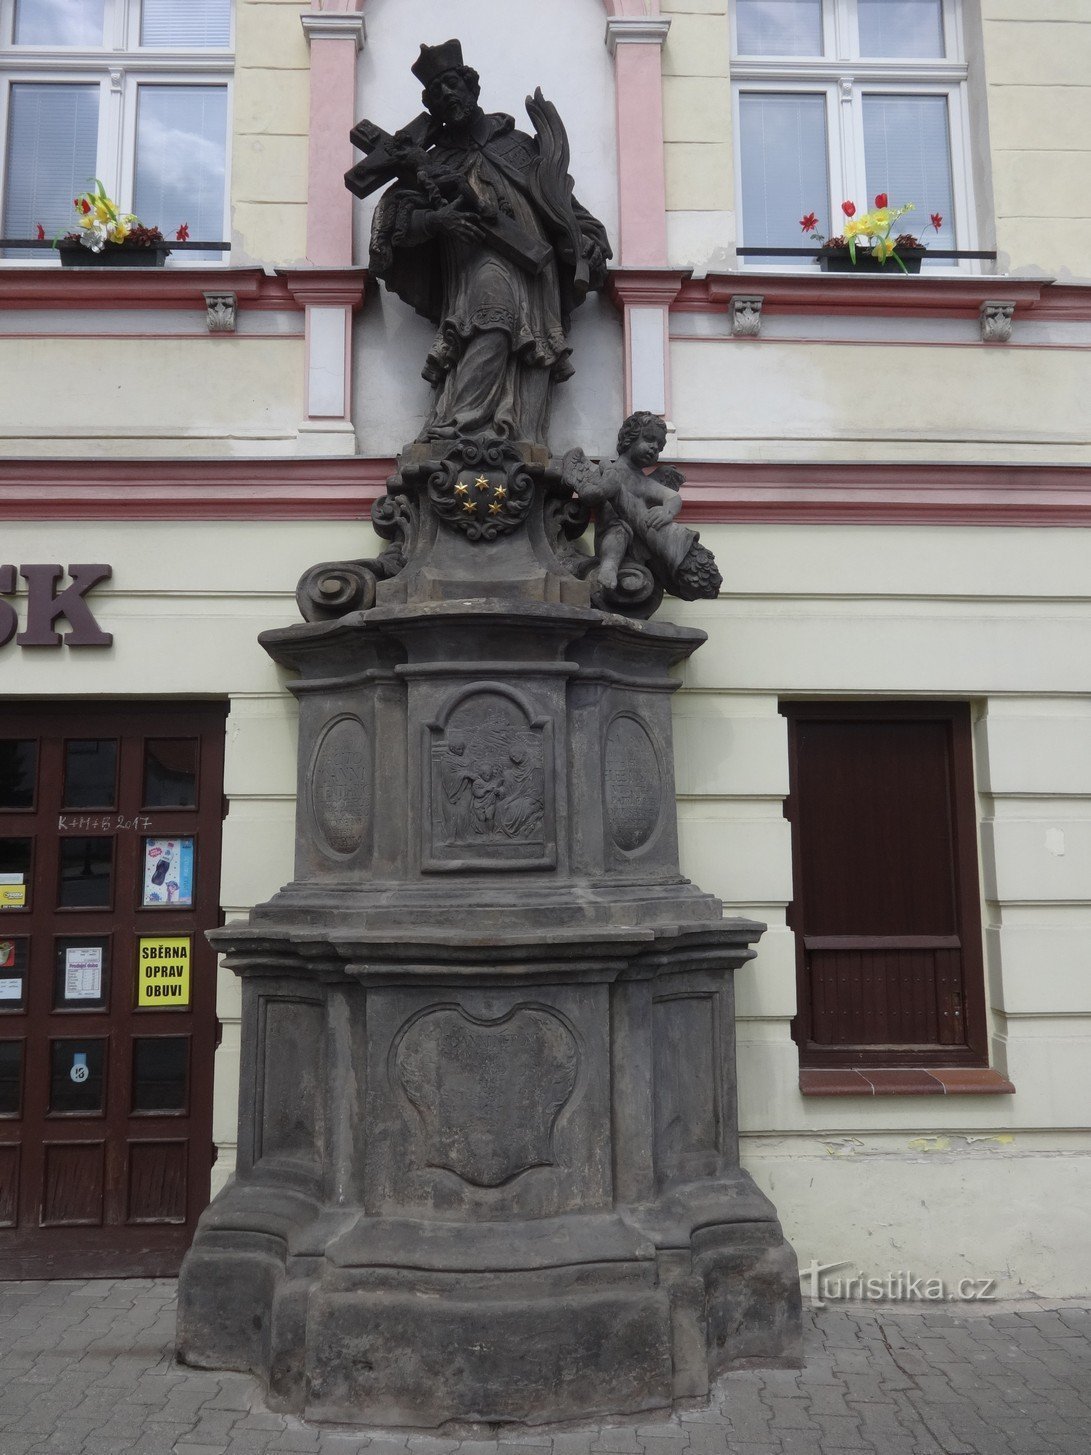 John (John) af Pomuk - St. Jan Nepomucký og hans statue i byen Osek